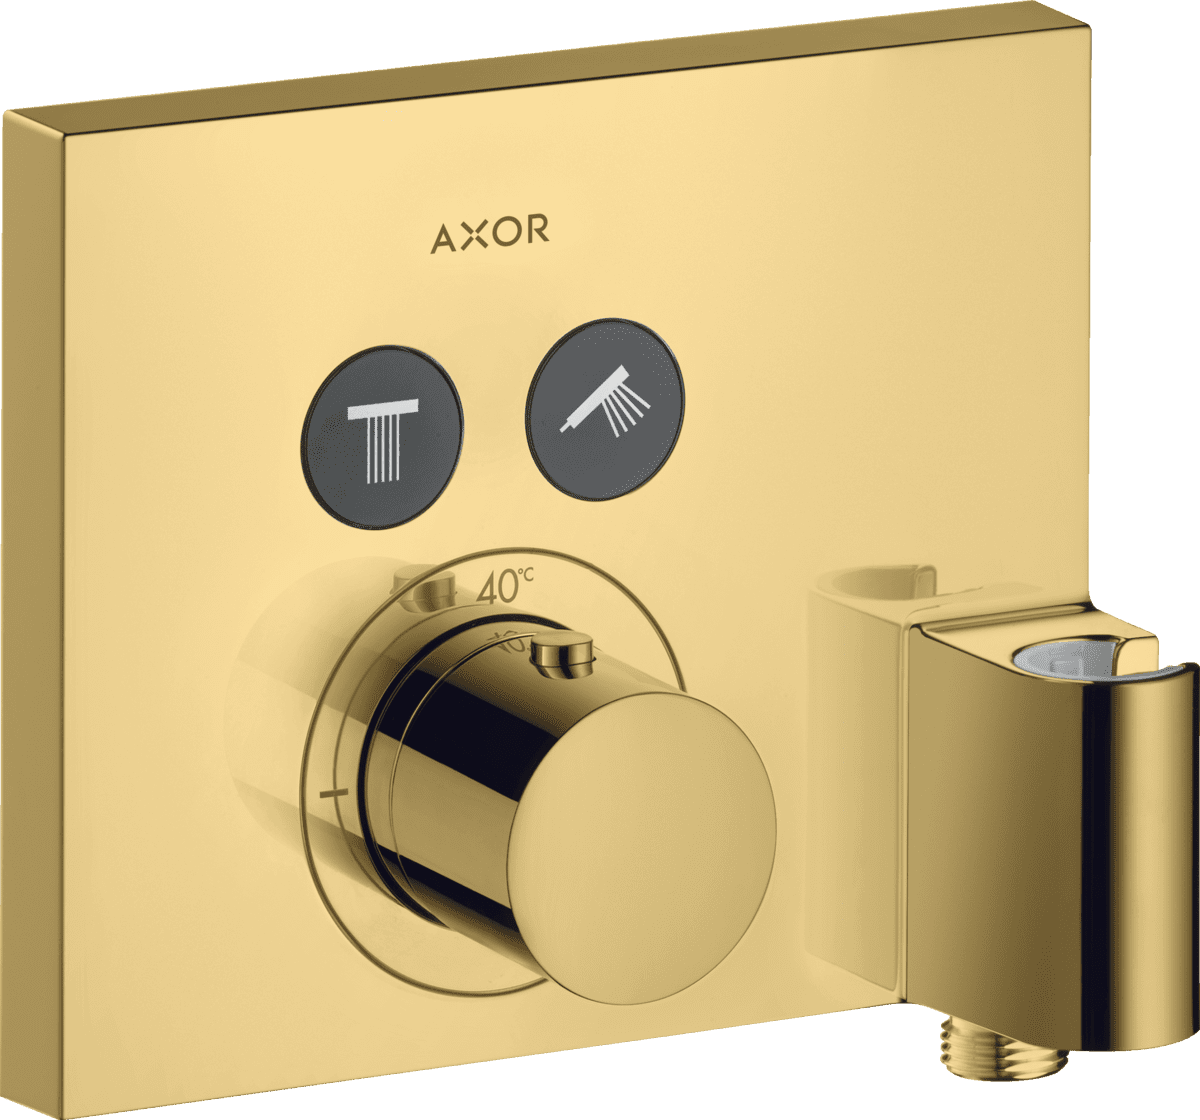 HANSGROHE AXOR ShowerSelect Termostat ankastre montaj, kare, 2 çıkış ve askılı gönye çıkış ile #36712990 - Parlak Altın Optik resmi